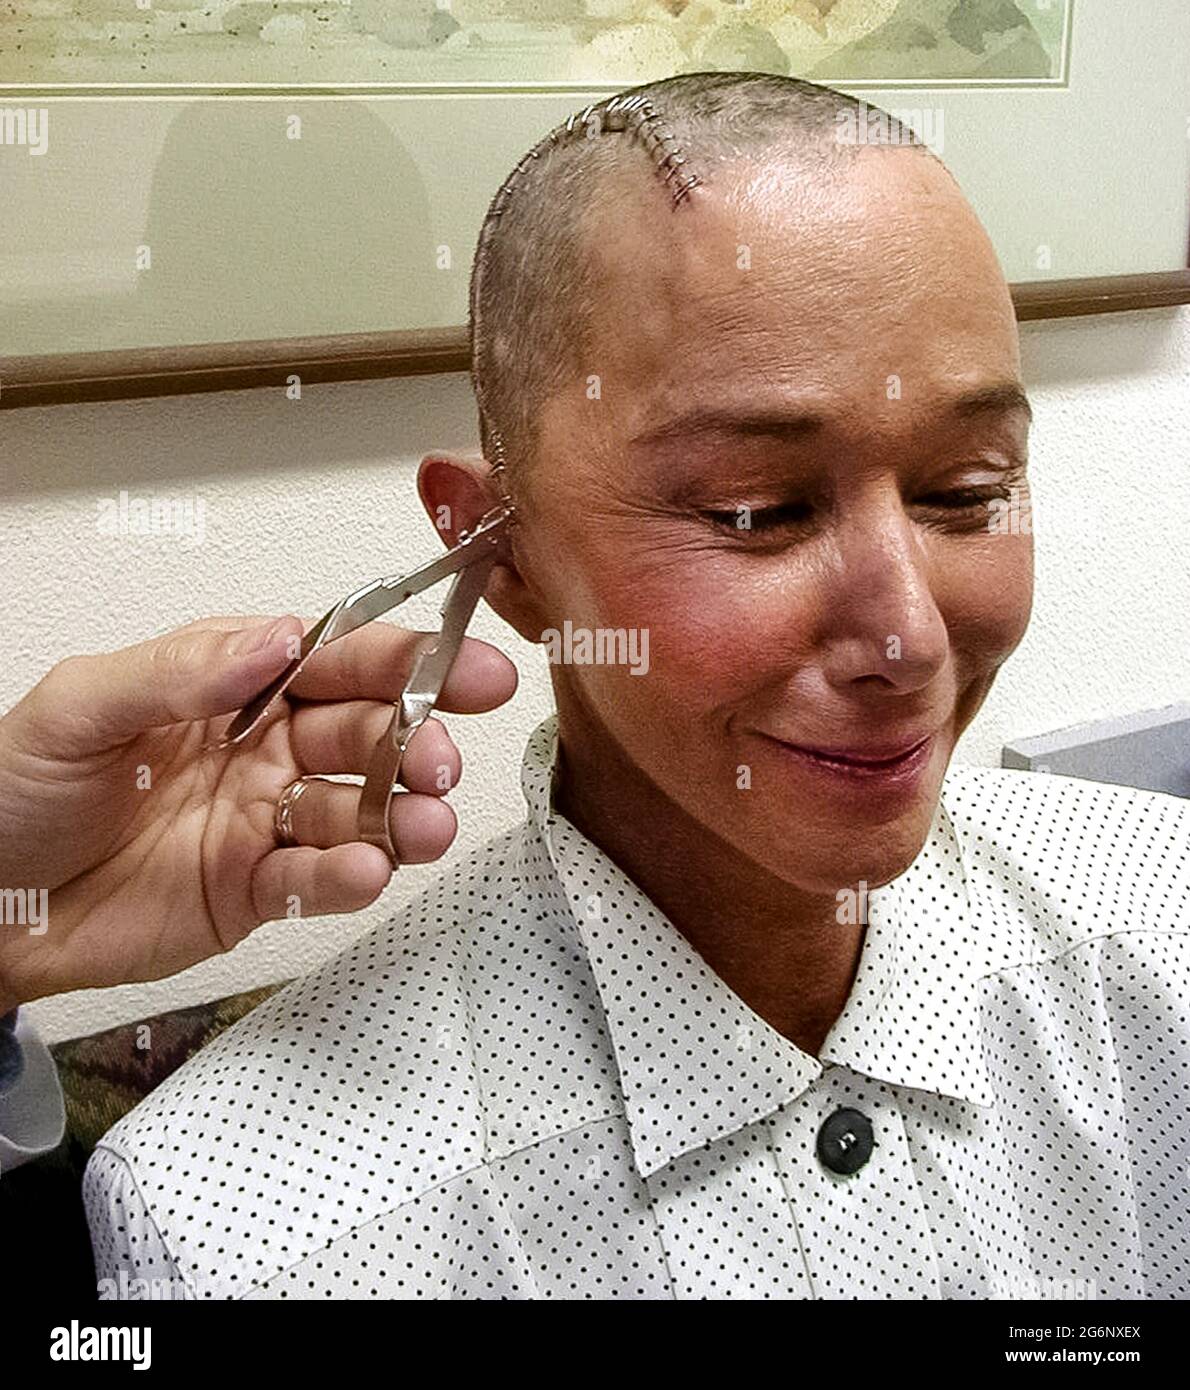 Eine Amerikanerin, die an Epilepsie litt, lächelt, als ihr Haar nachwächst und ein Arzt die Edelstahlklammern entfernt, die verwendet wurden, um einen großen Schnitt in ihrem Kopf nach einer Operation an ihrem Gehirn zu schließen. Ihr Haar wurde abrasiert, bevor der Chirurg in ihre Kopfhaut und ihren Schädel (Schädel) Schnitt, um eine zeitliche Lobektomie durchzuführen, eine Operation, die die Anzahl der Anfälle verringern, sie weniger stark machen oder sogar verhindern kann, dass sie passieren. Während dieses medizinischen Eingriffs entfernte der Arzt einen Teil des Schläfenlappens ihres Gehirns, wo die meisten Anfälle beginnen. (5. Von 7 verwandten Bildern.) Modell freigegeben. Stockfoto